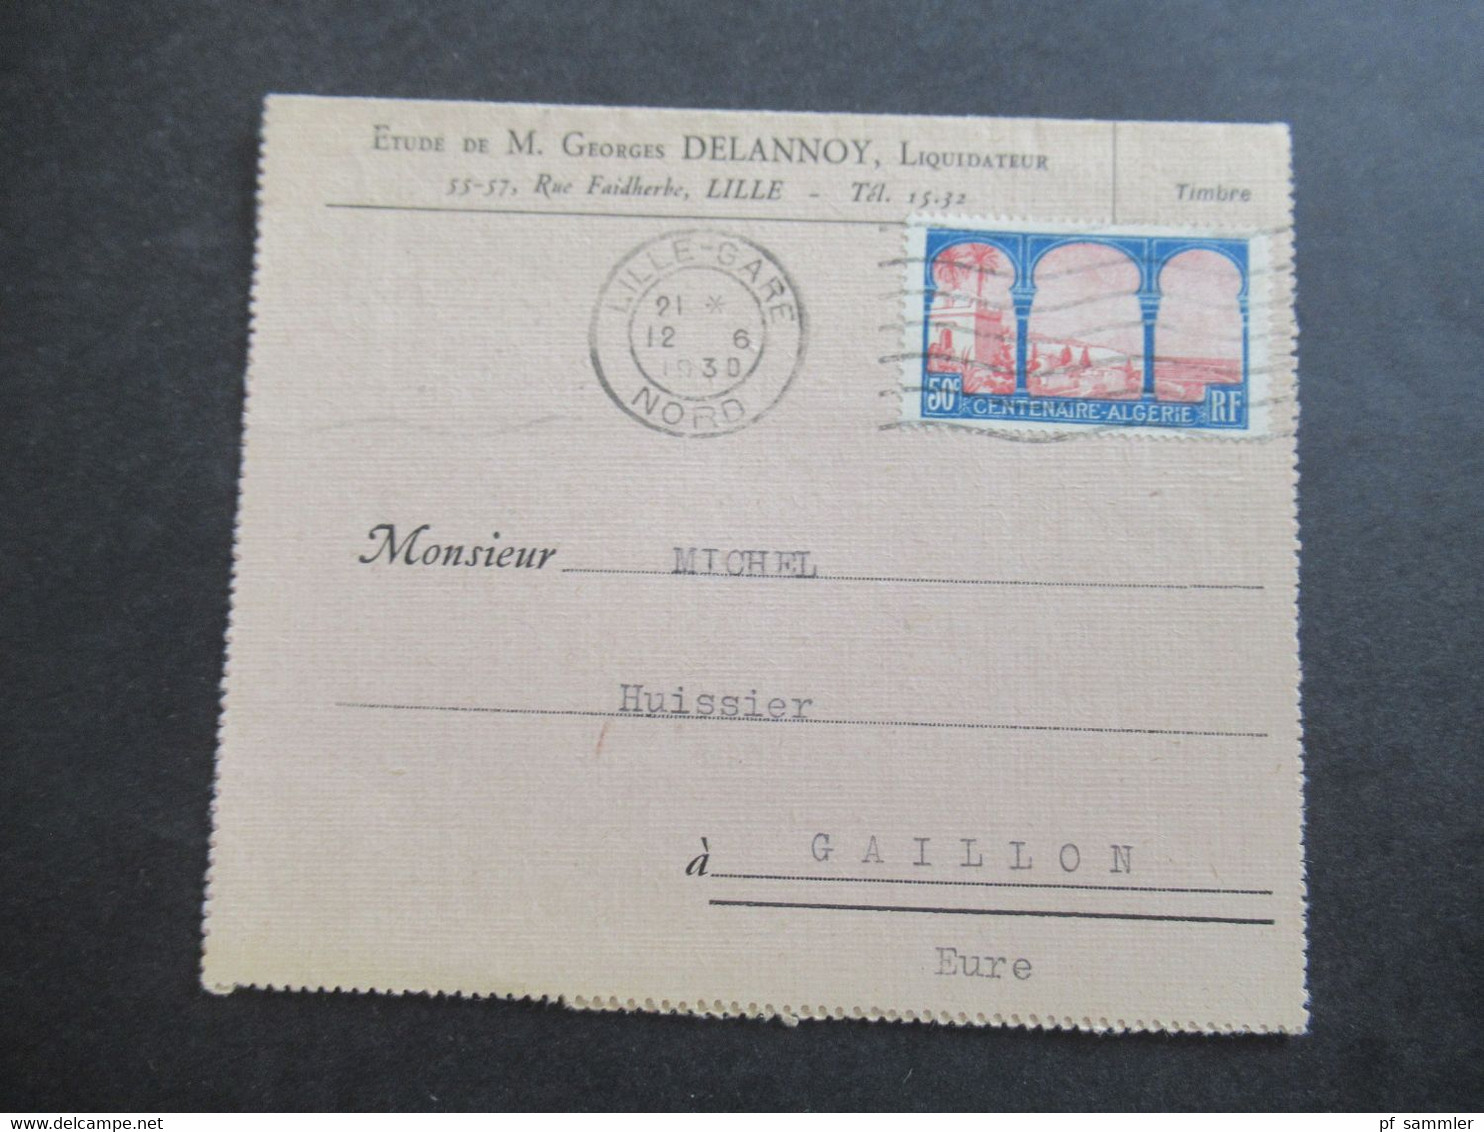 Frankreich 1930 Centeaire Algerie Kartenbrief Etude De M. Geotges Delannoy, Liquidateur Lille Nach Gaillon Gesendet - Briefe U. Dokumente